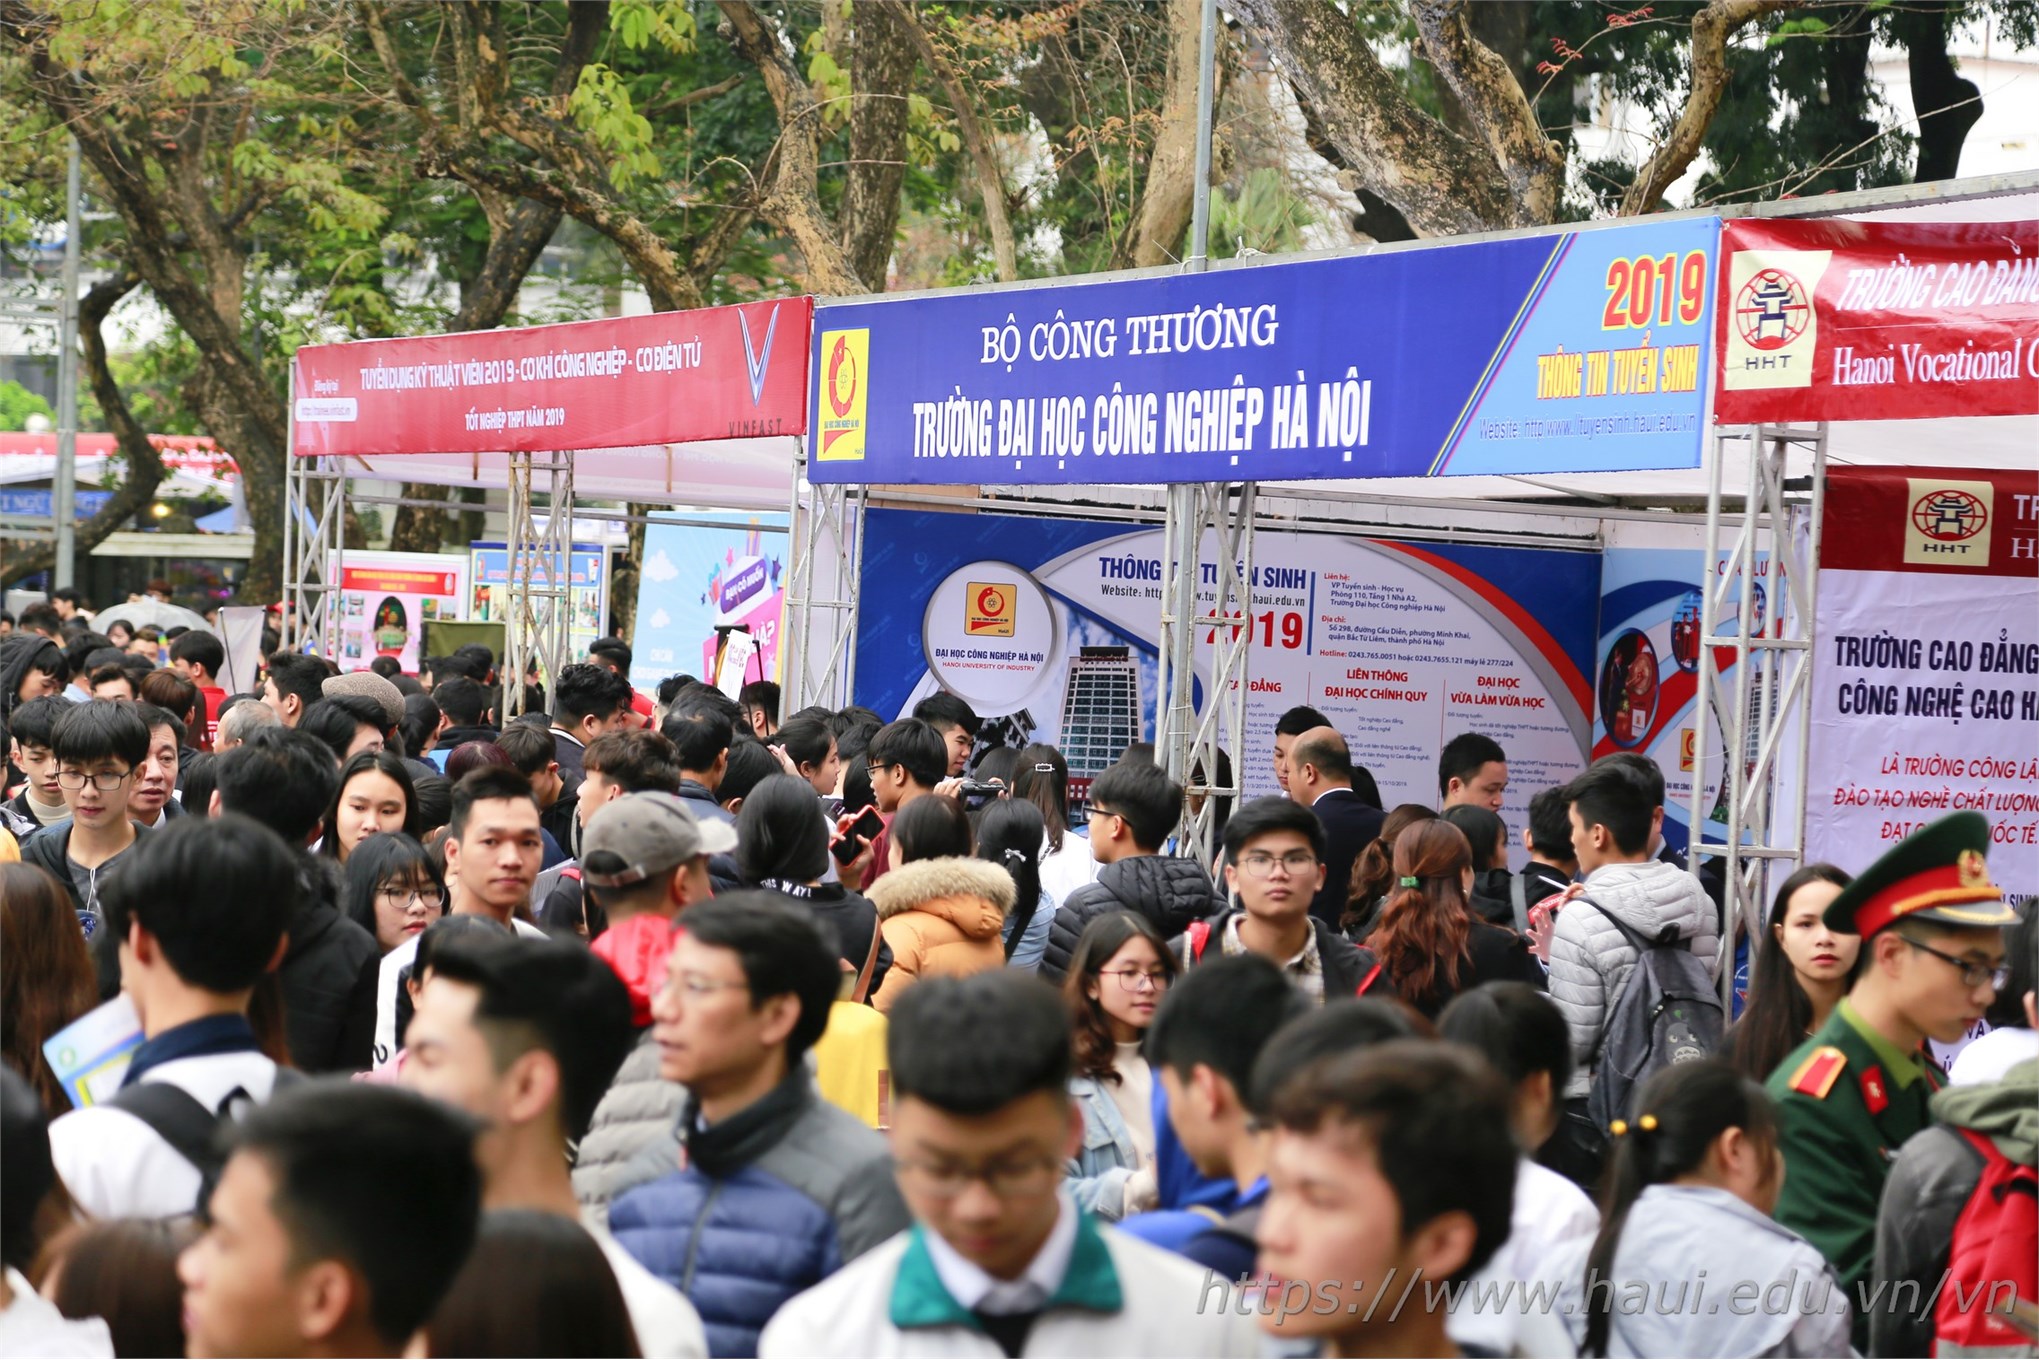 103.119 nguyện vọng đăng ký xét tuyển vào Đại học Công nghiệp Hà Nội năm 2019